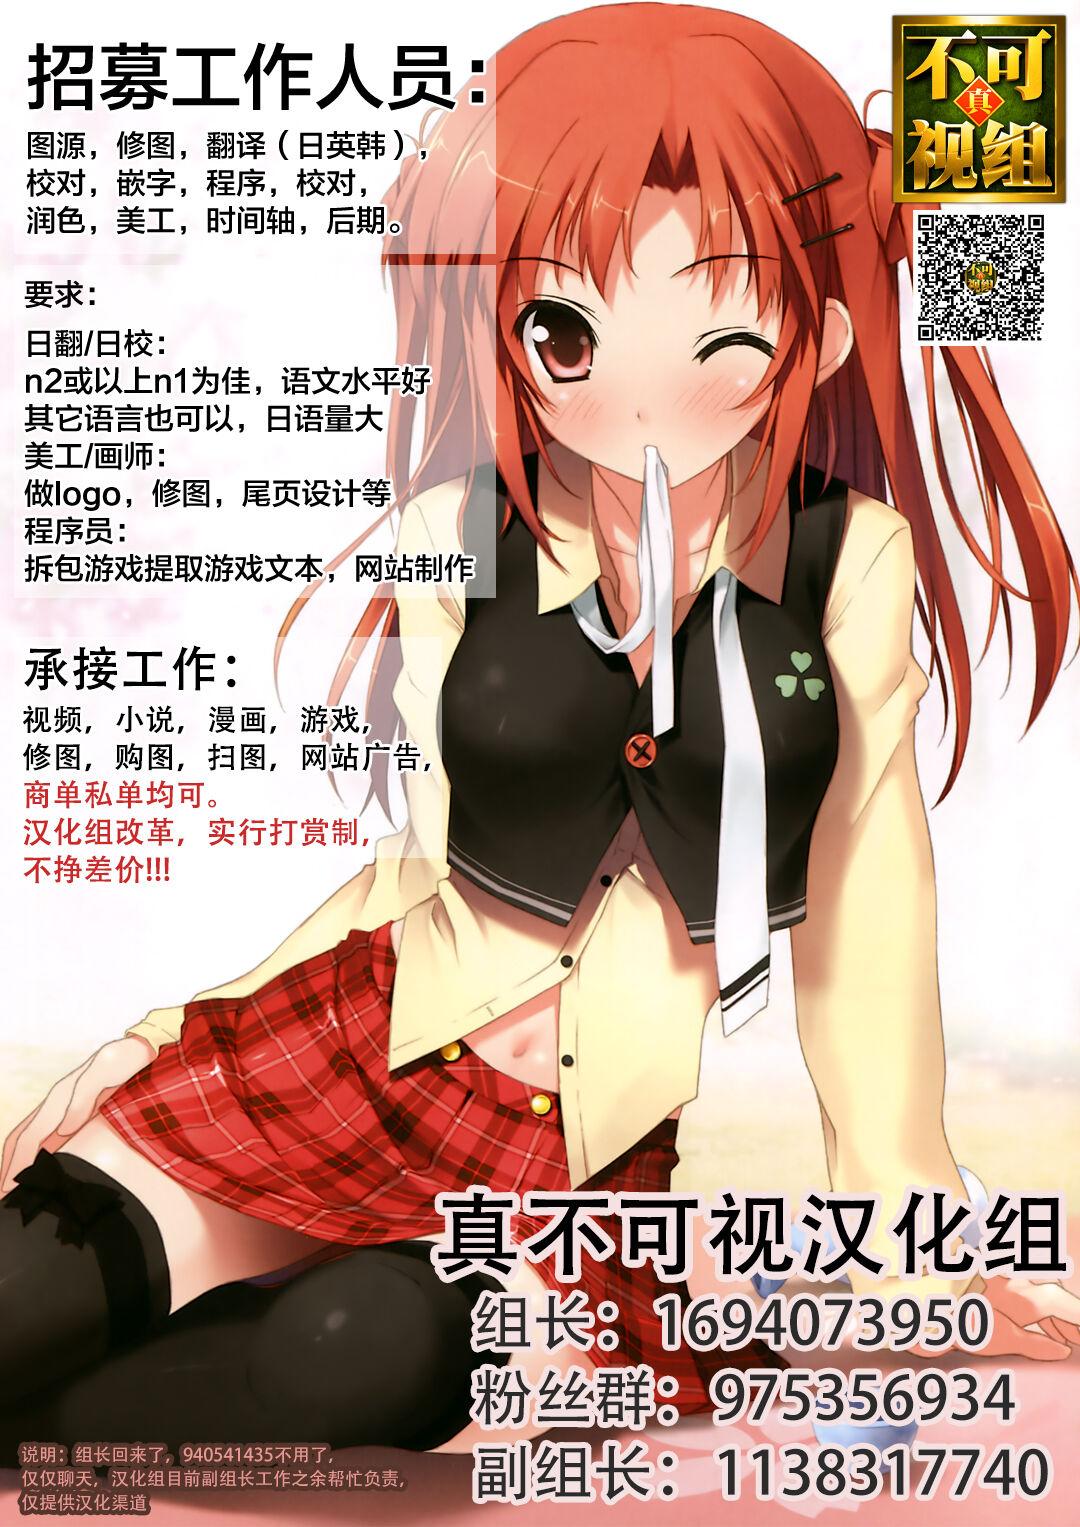 Homura & Hikari Sennou NTR Manga 14P 15